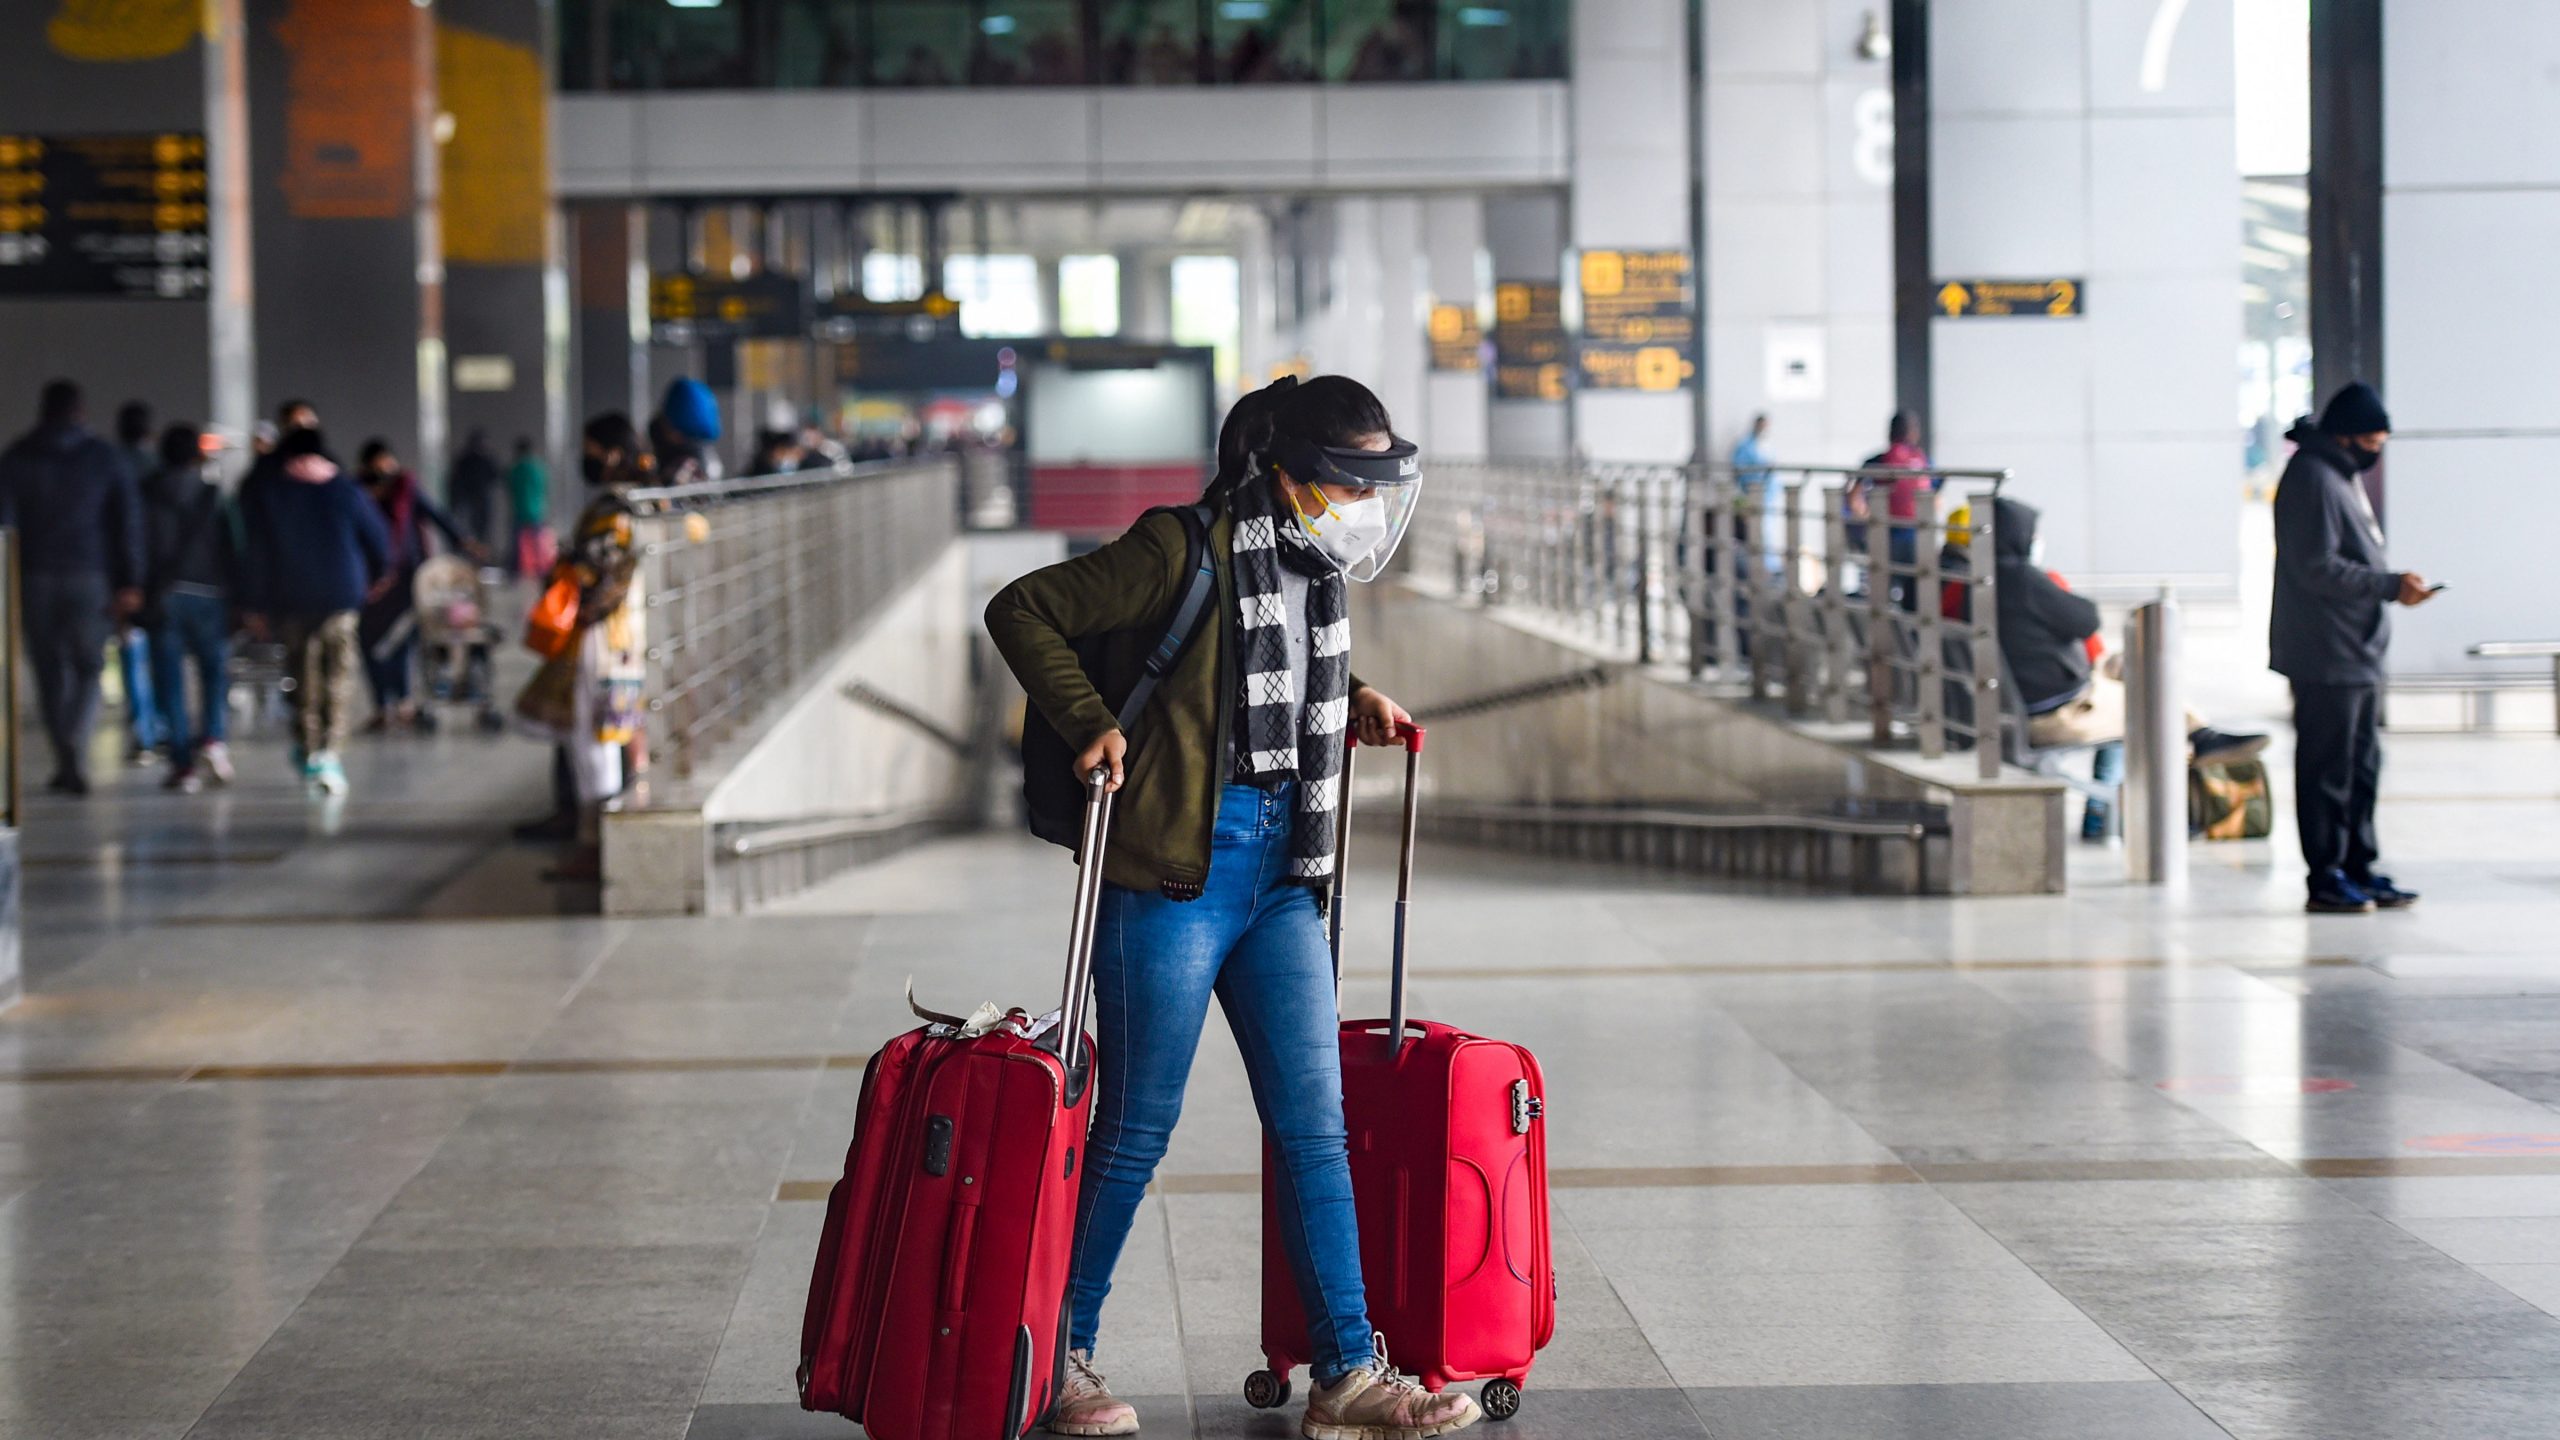 Omicron के बीच भारत सरकार का आदेश- विदेश से आए सभी यात्रियों के लिए 7 दिनों का होम क्वारंटाइन जरूरी